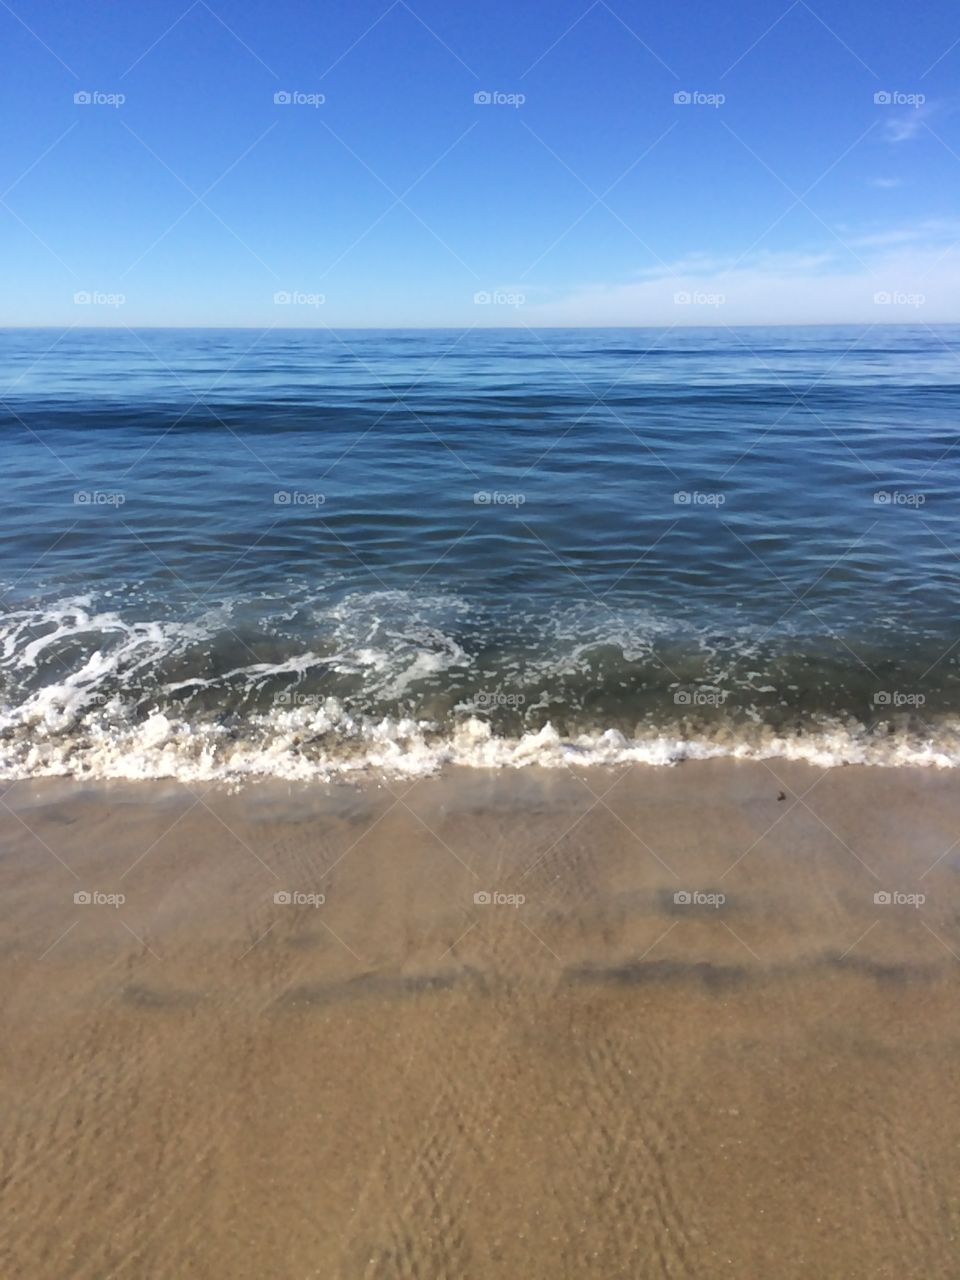 Where the Ocean Meets the Beach